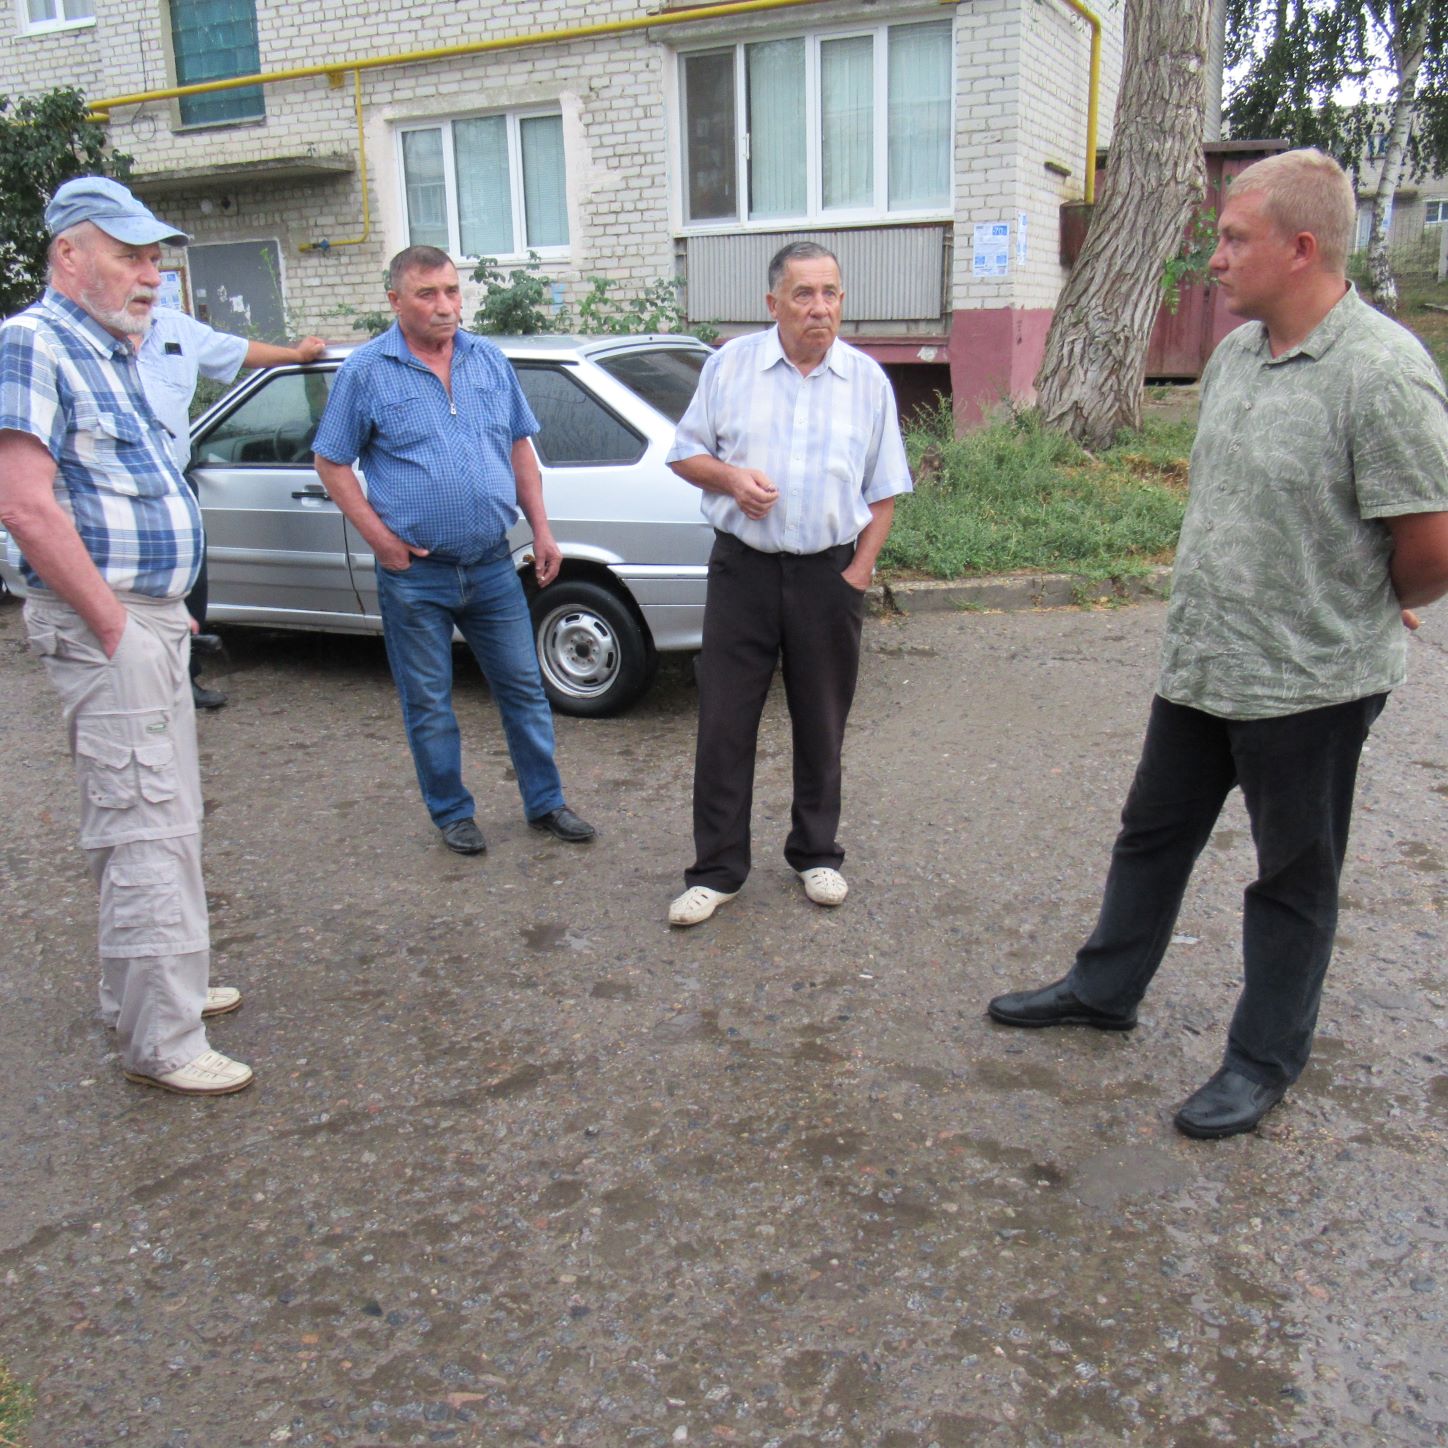 Проблему капитального ремонта обсуждали на встрече с жителями.